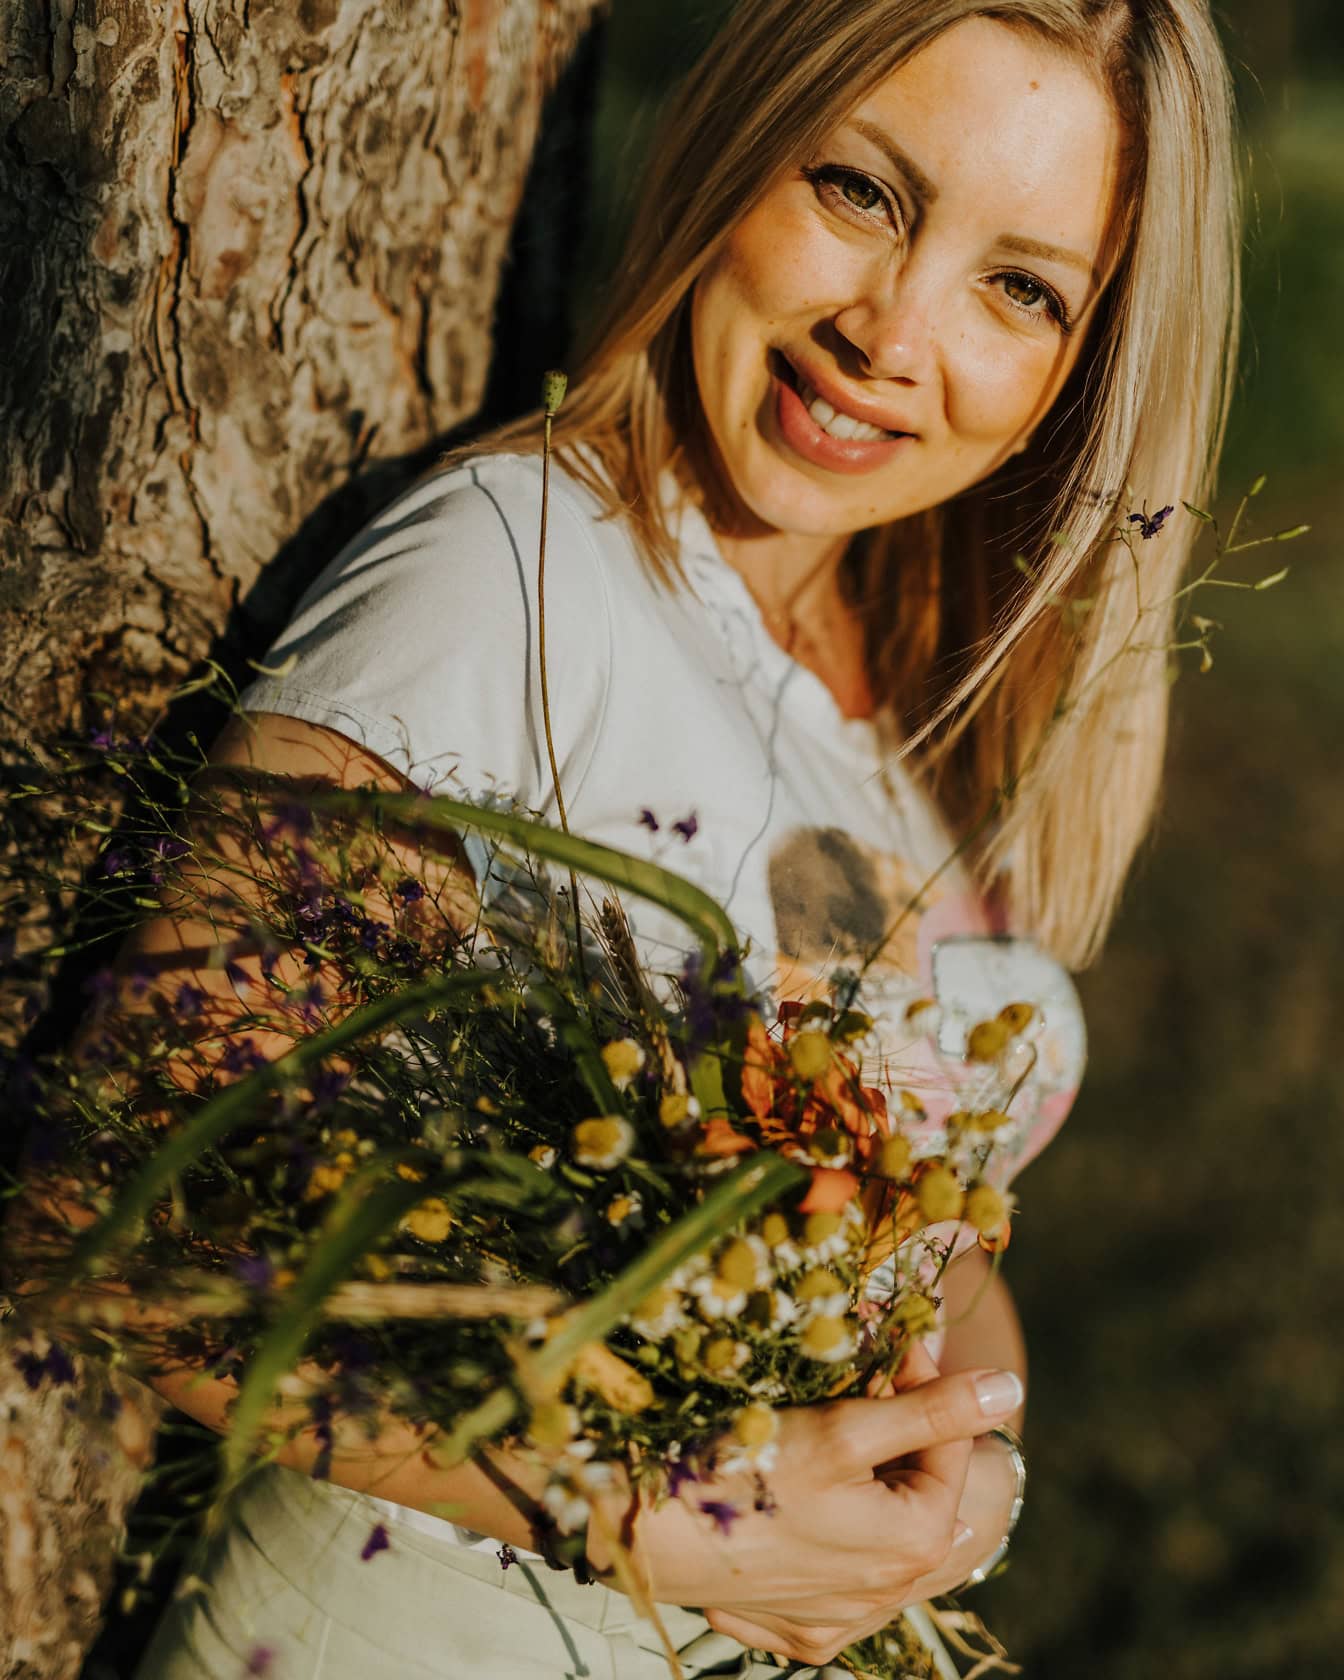 Chân dung một người phụ nữ tóc vàng mỉm cười dựa vào cây trong khi cầm một bó hoa dại